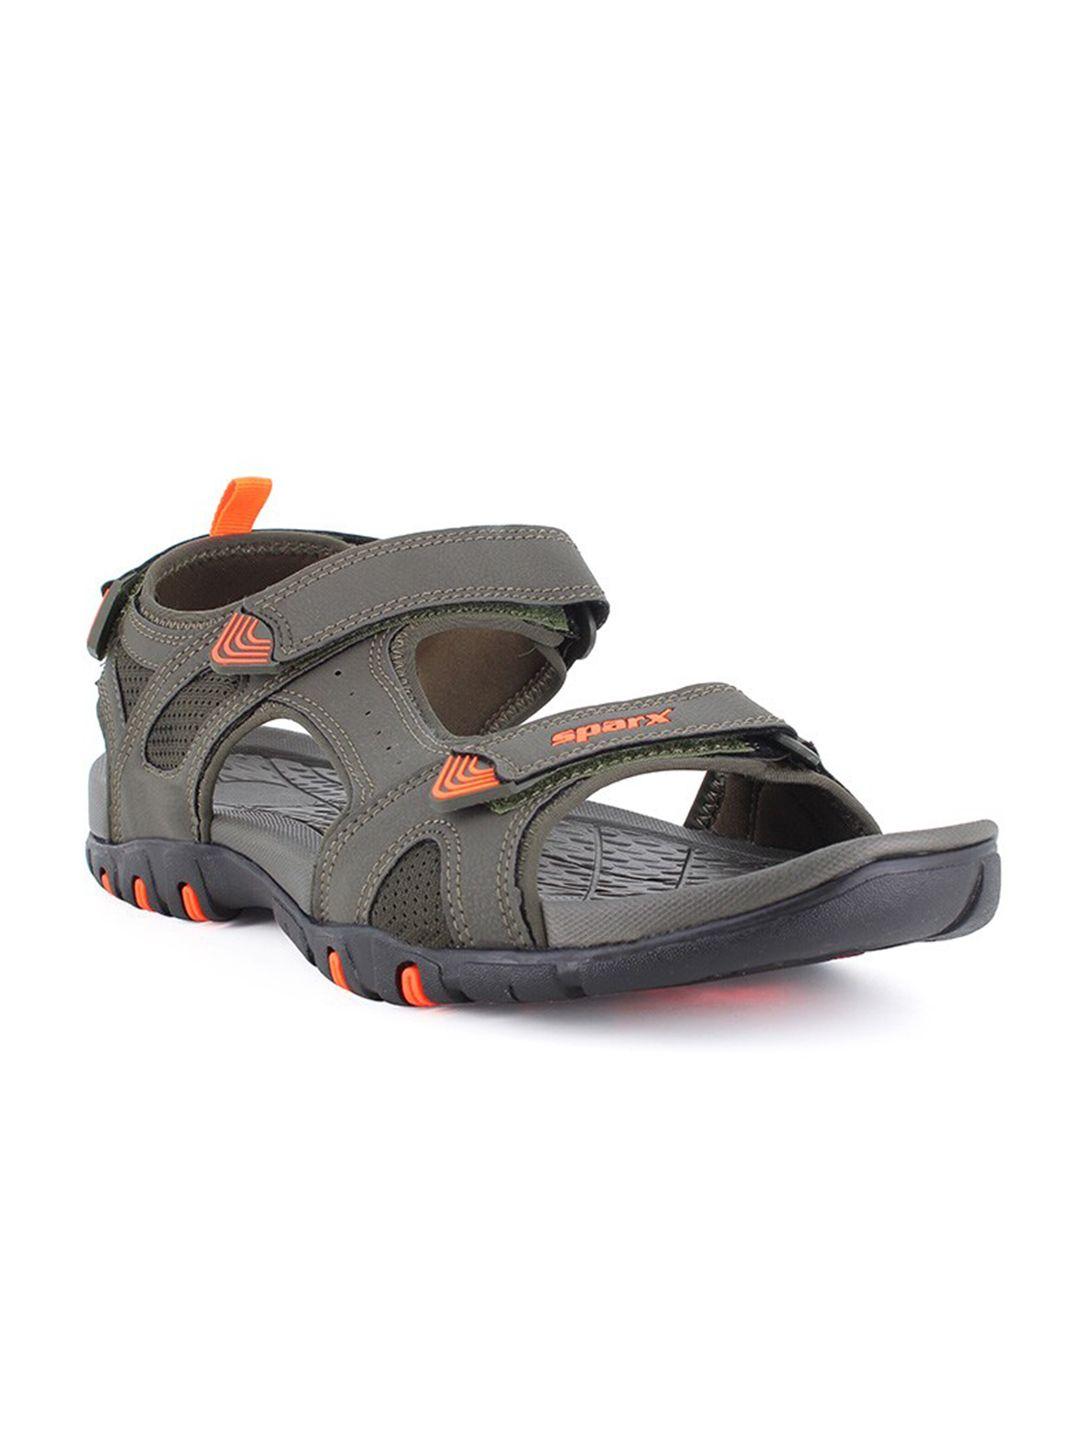 sparx-men-brand-logo-sports-sandals